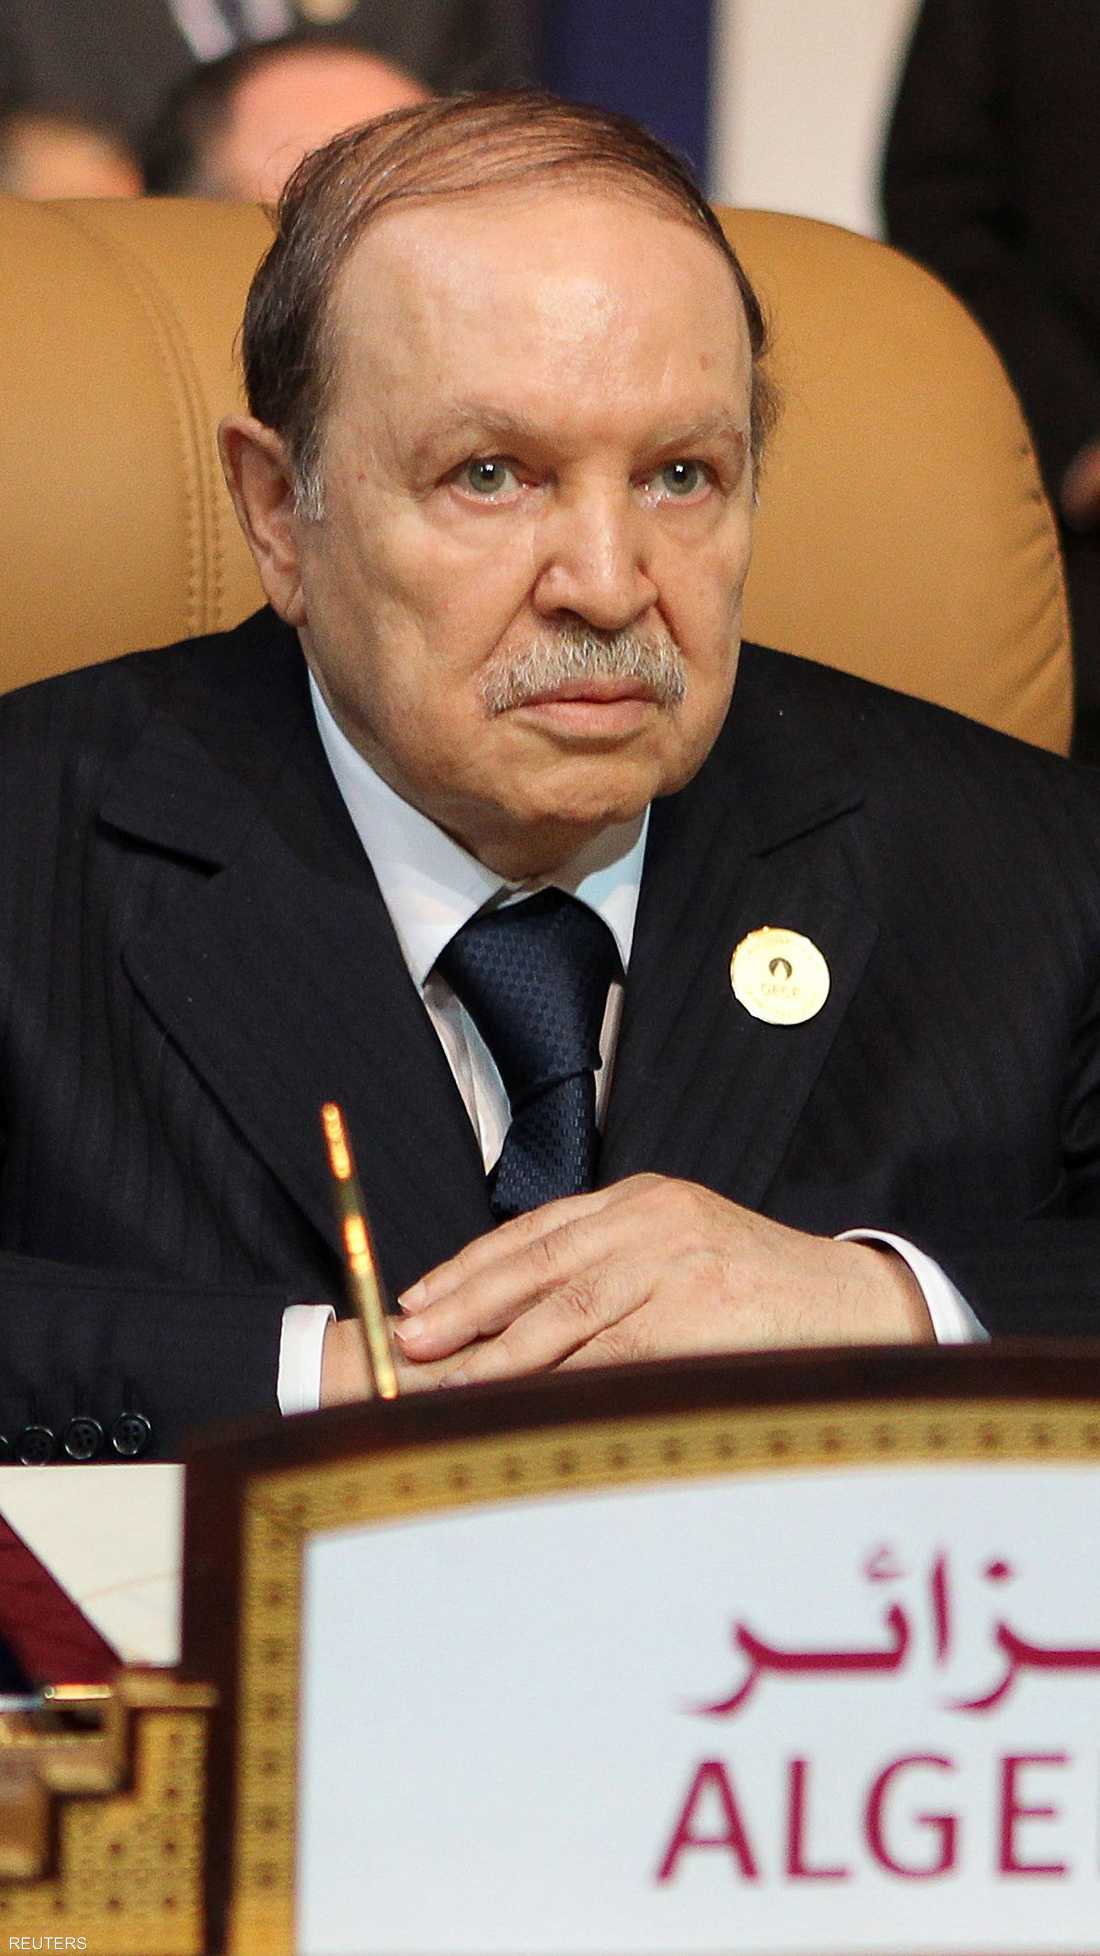 أصبح بوتفليقة أطول رؤساء الجزائر ببقائه نحو 20 عاما في الحكم